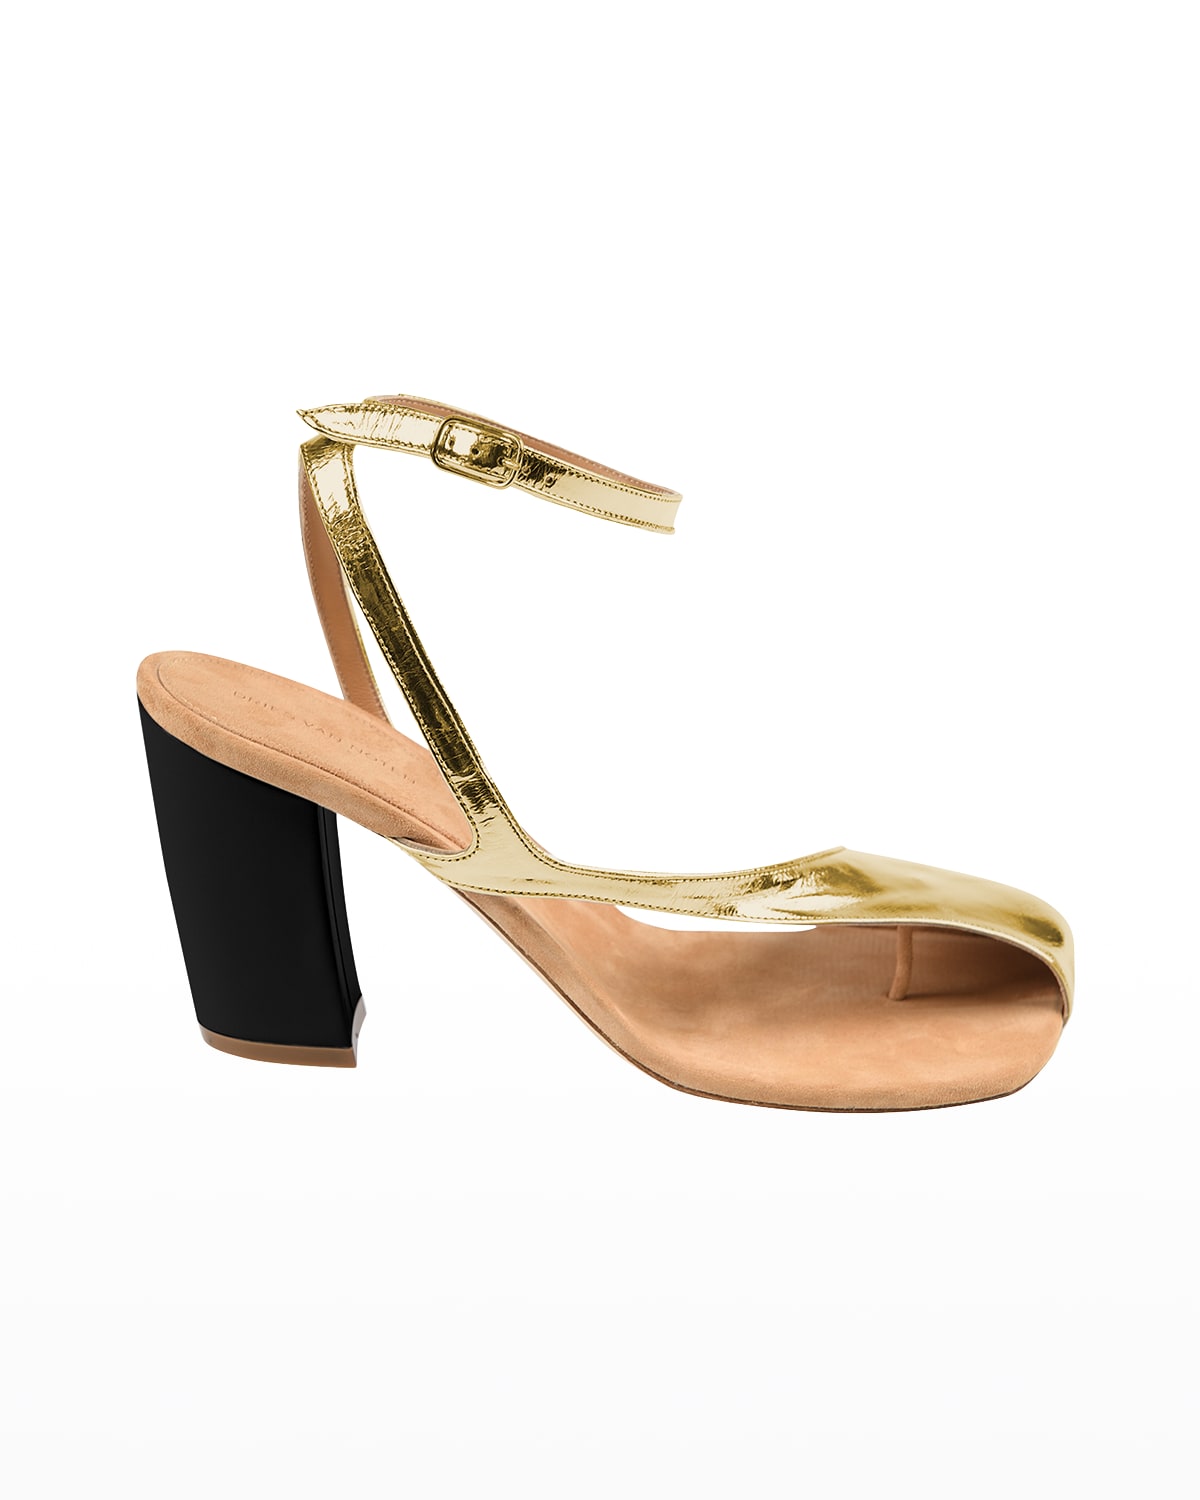 Dries Van Noten Donna Metallic Asymmetrical Block-Heel Sandals ... بطاقات